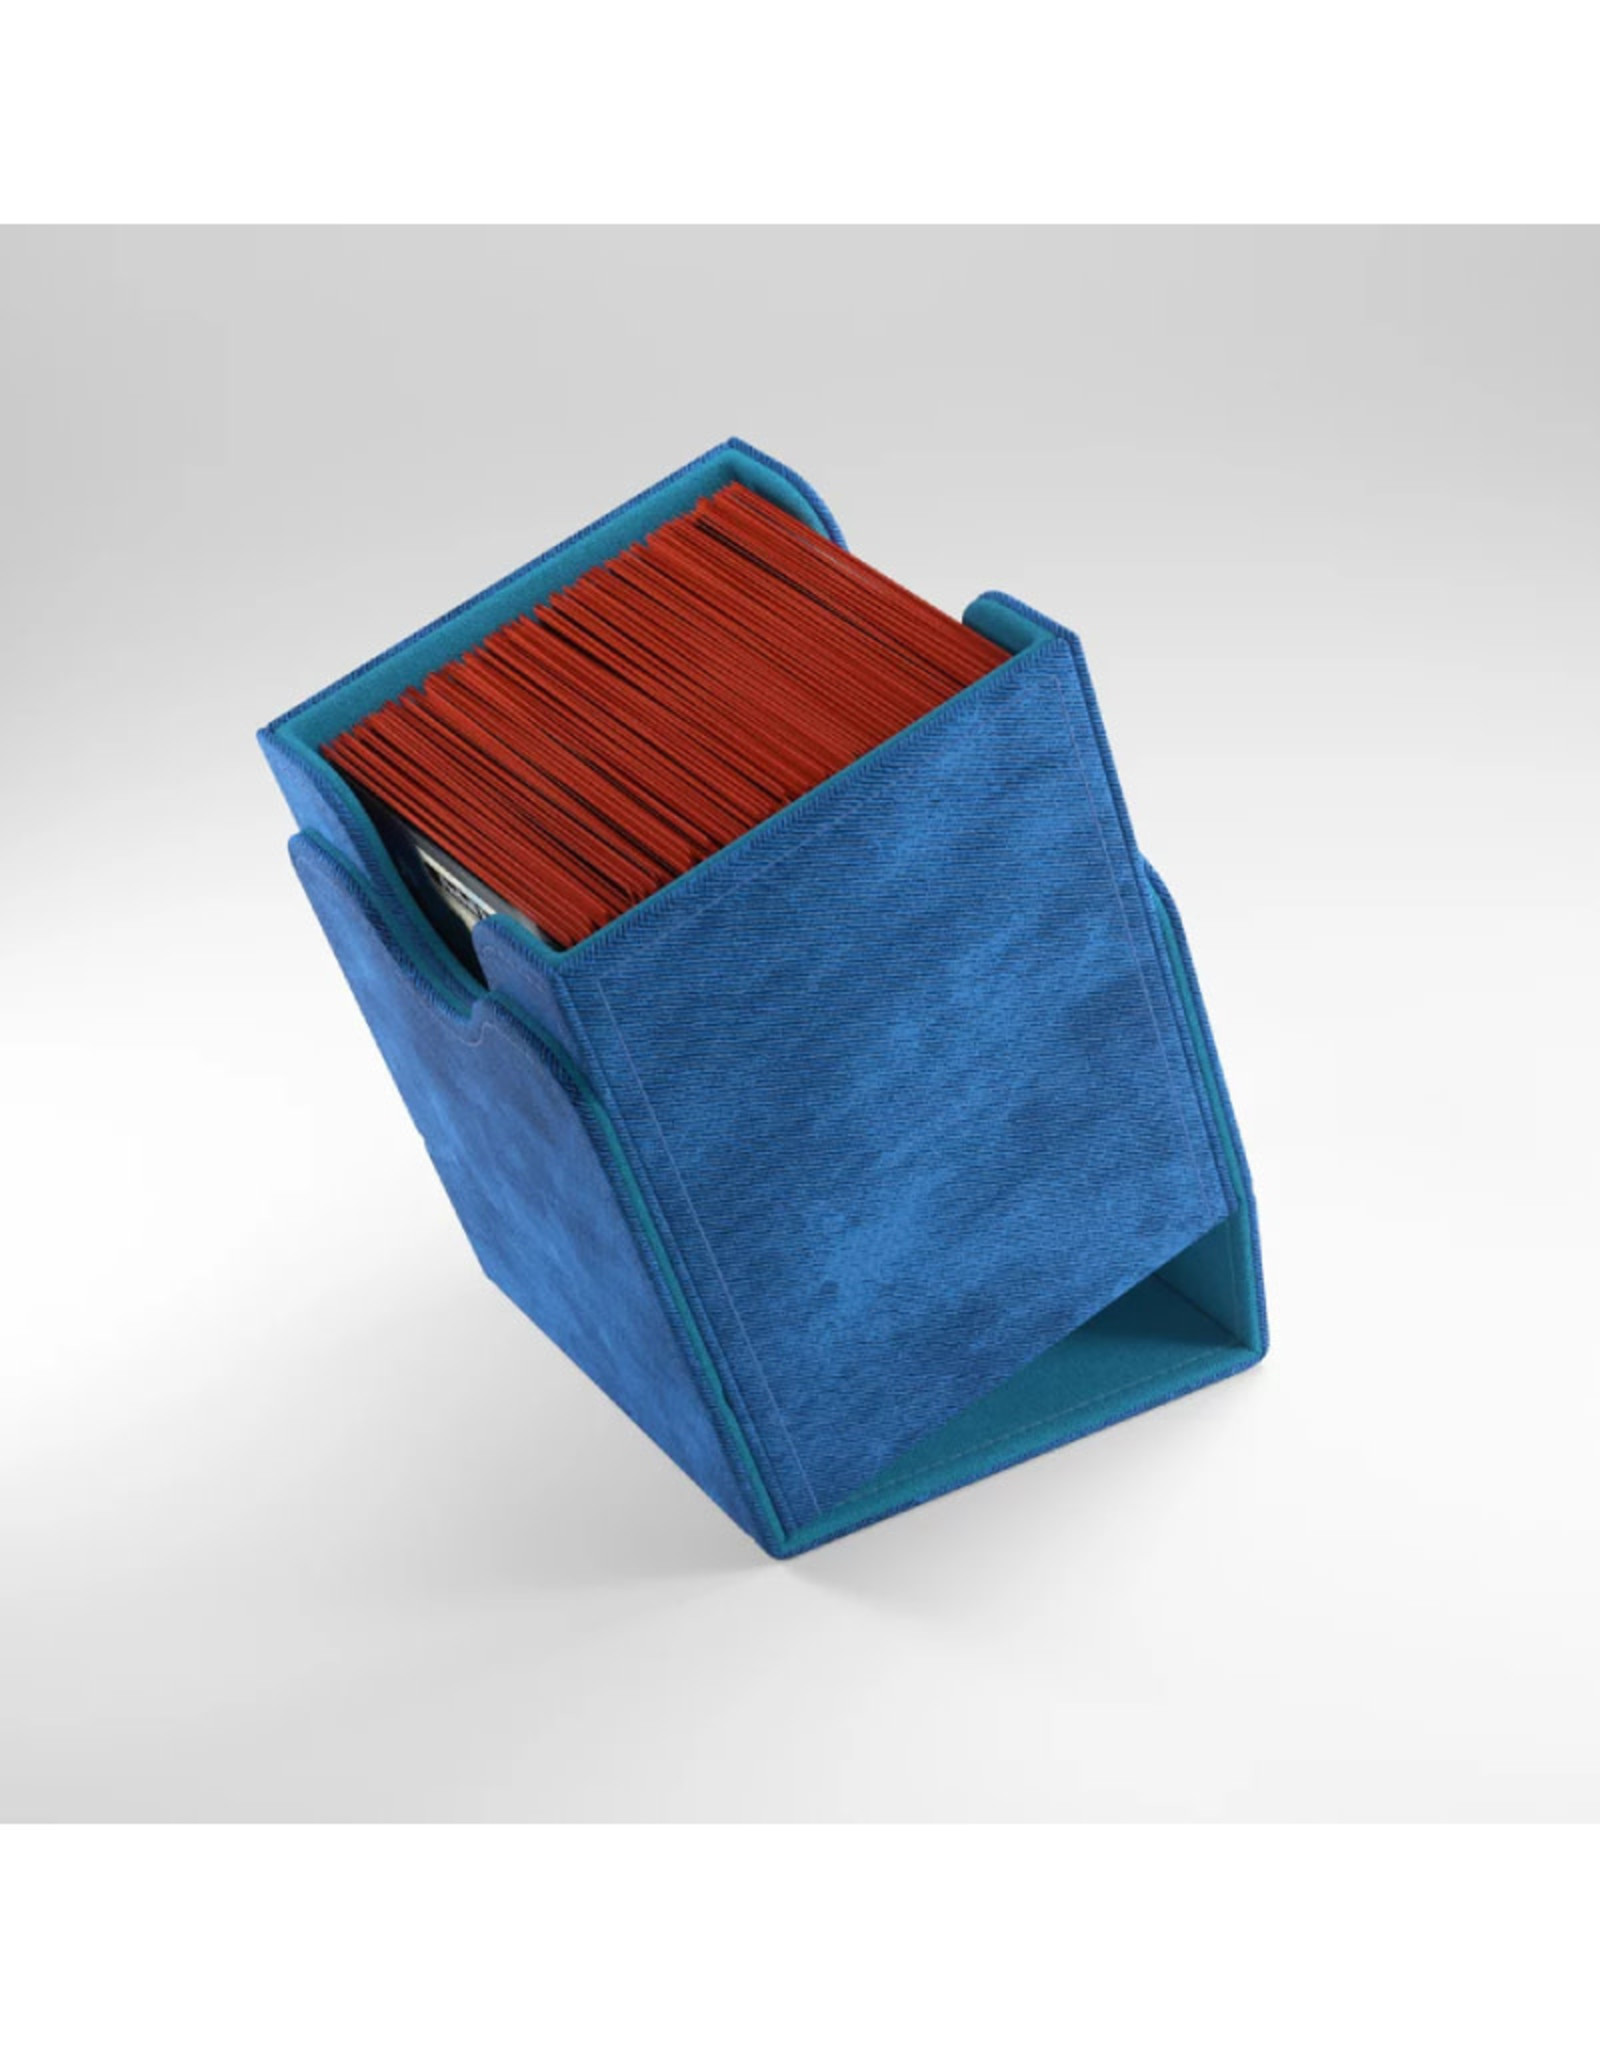 Deck Box: Squire XL 100+ Blue